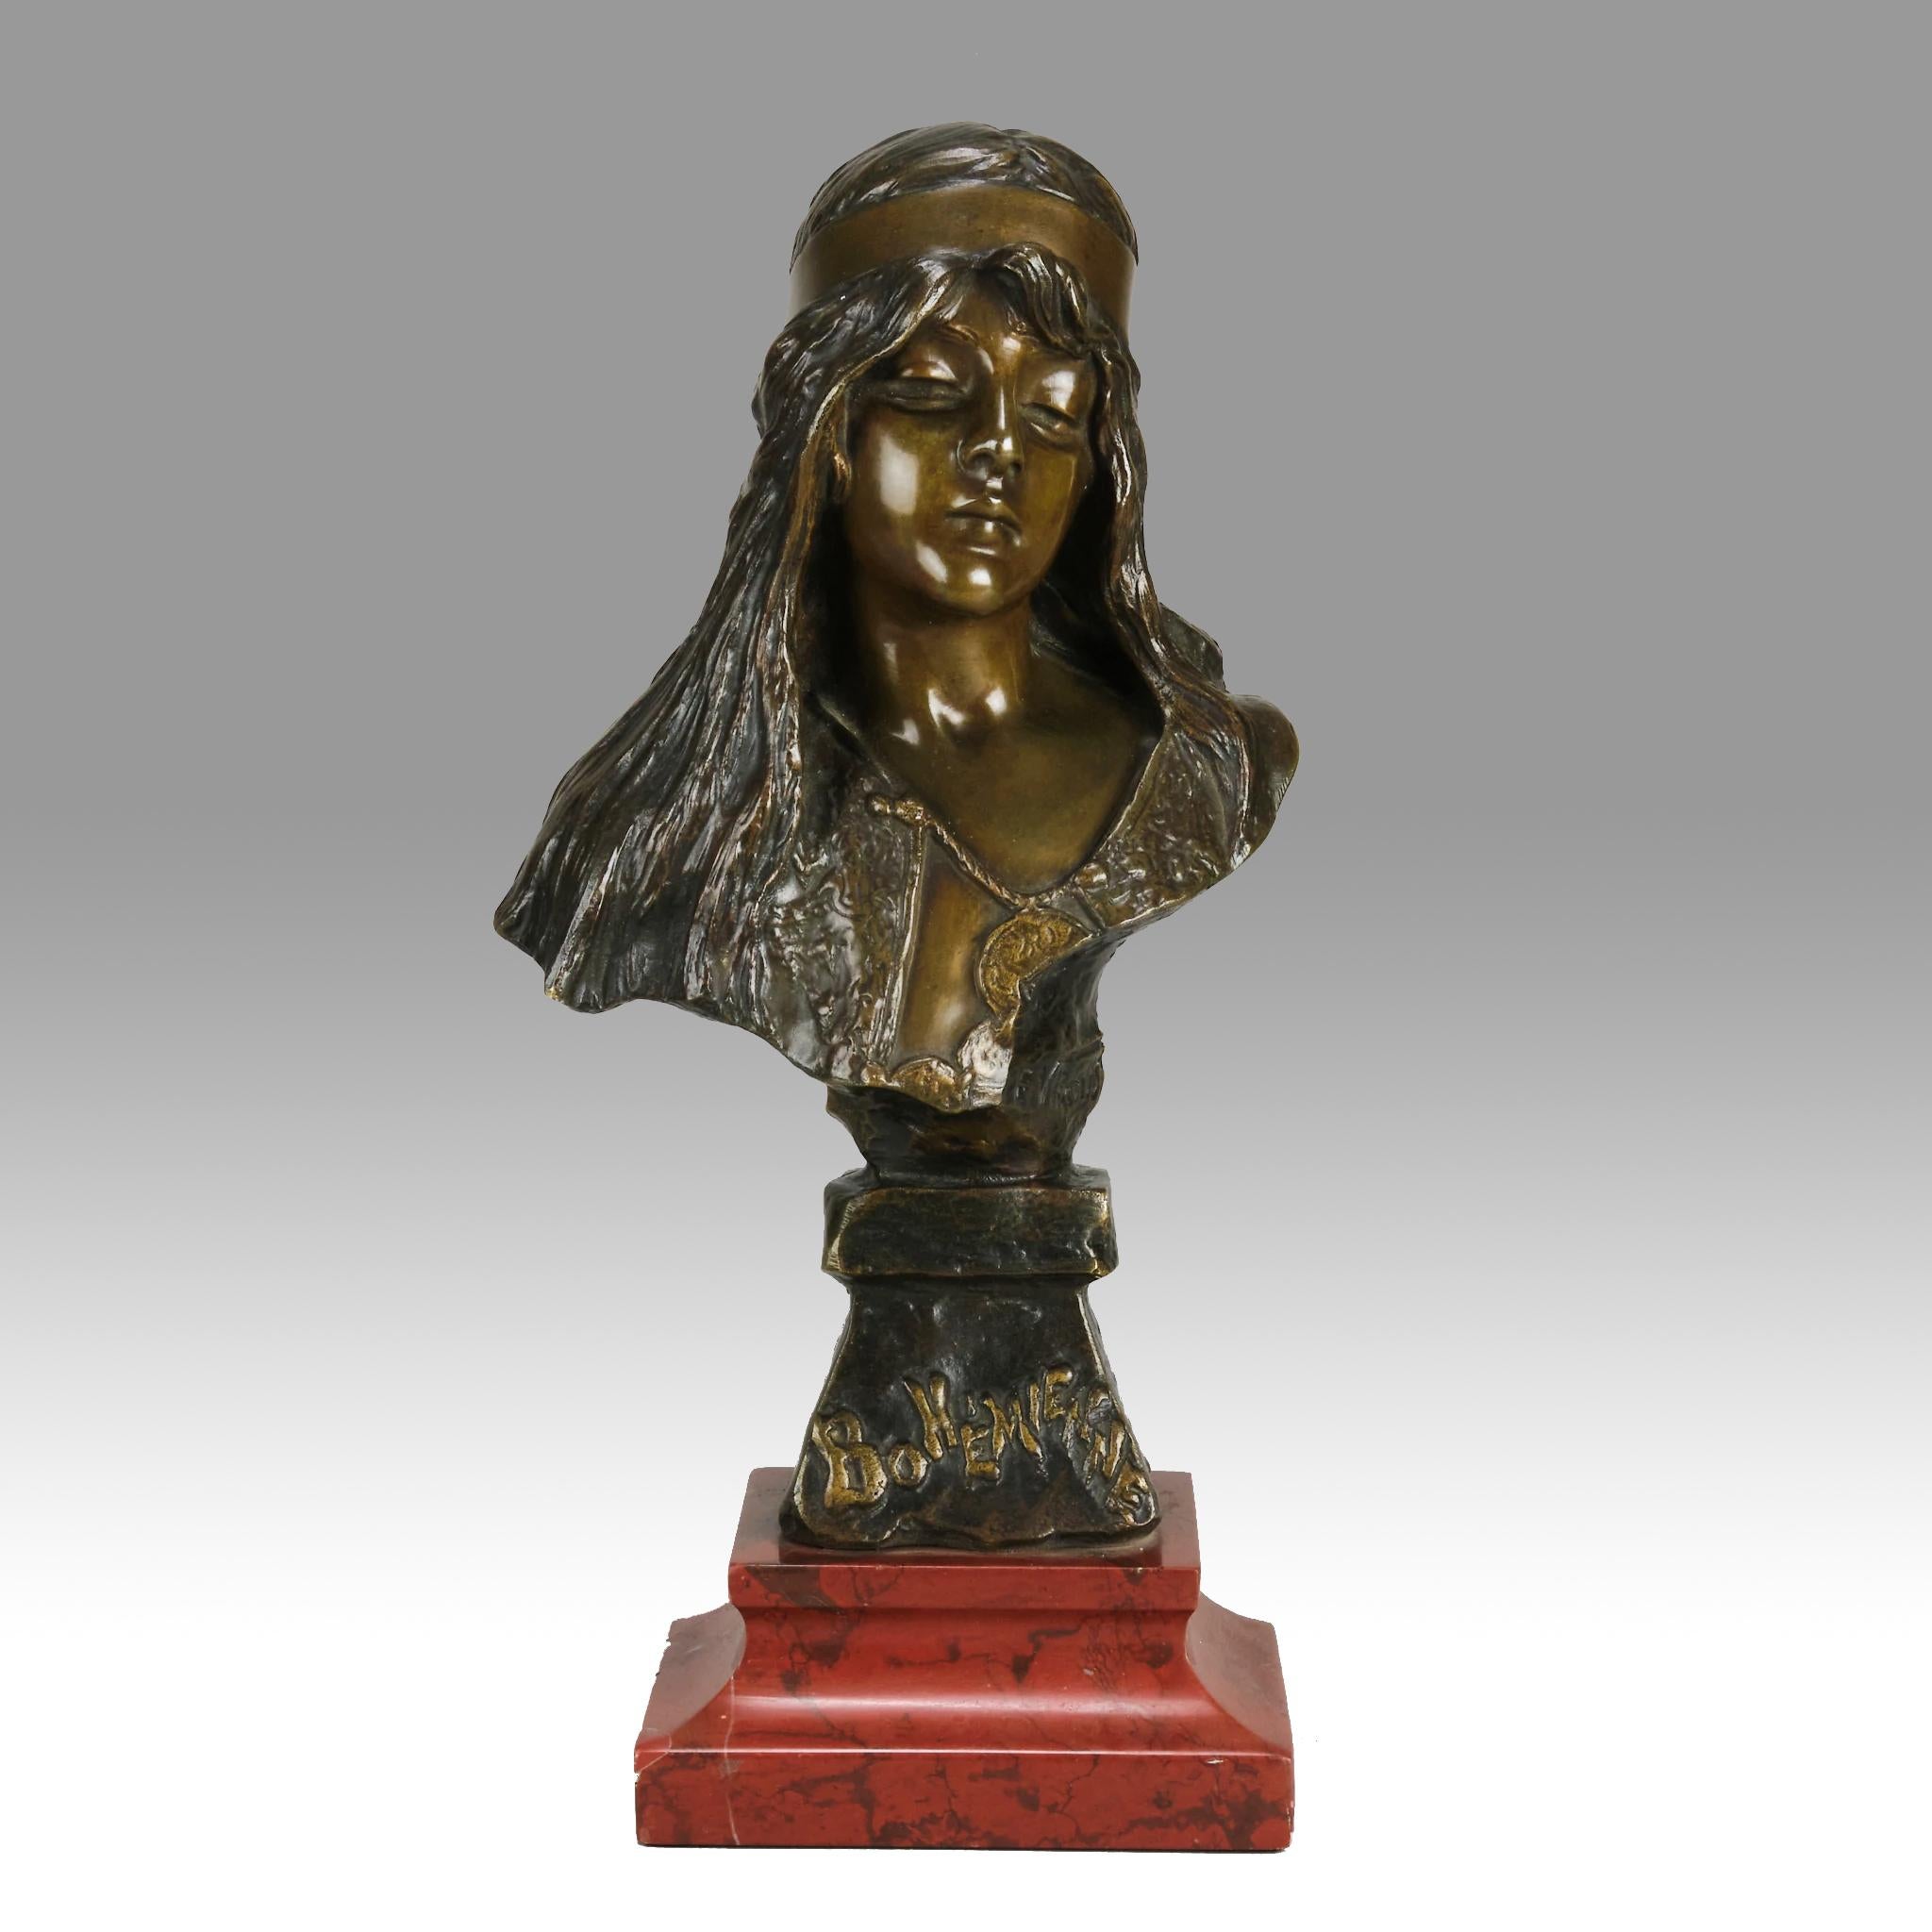 Captivant buste en bronze français de la fin du XIXe siècle représentant une belle femme, rehaussé par une patine brune riche et variée et d'excellents détails de surface tactiles, reposant sur une base intégrale en bronze avec un titre en relief à